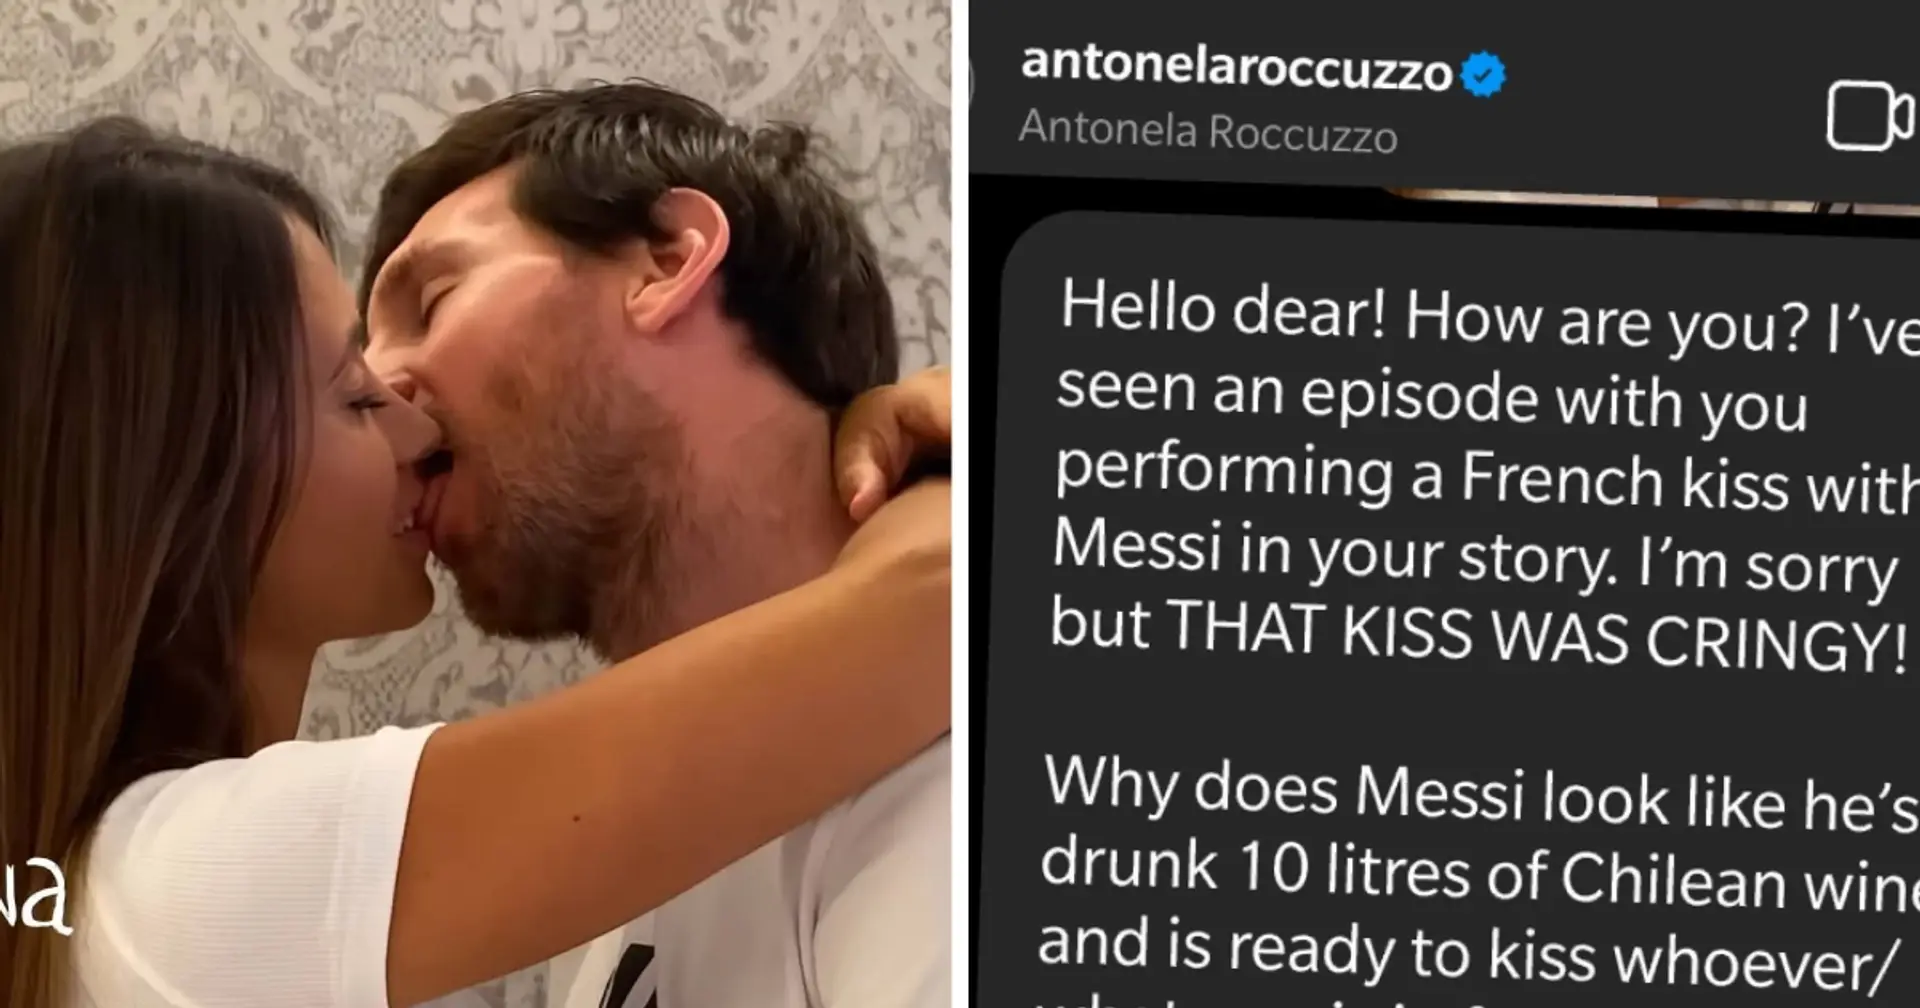 El beso con lengua de Messi y Antonella era MUY avergonzante. La envié un mensaje y la di 4 consejos